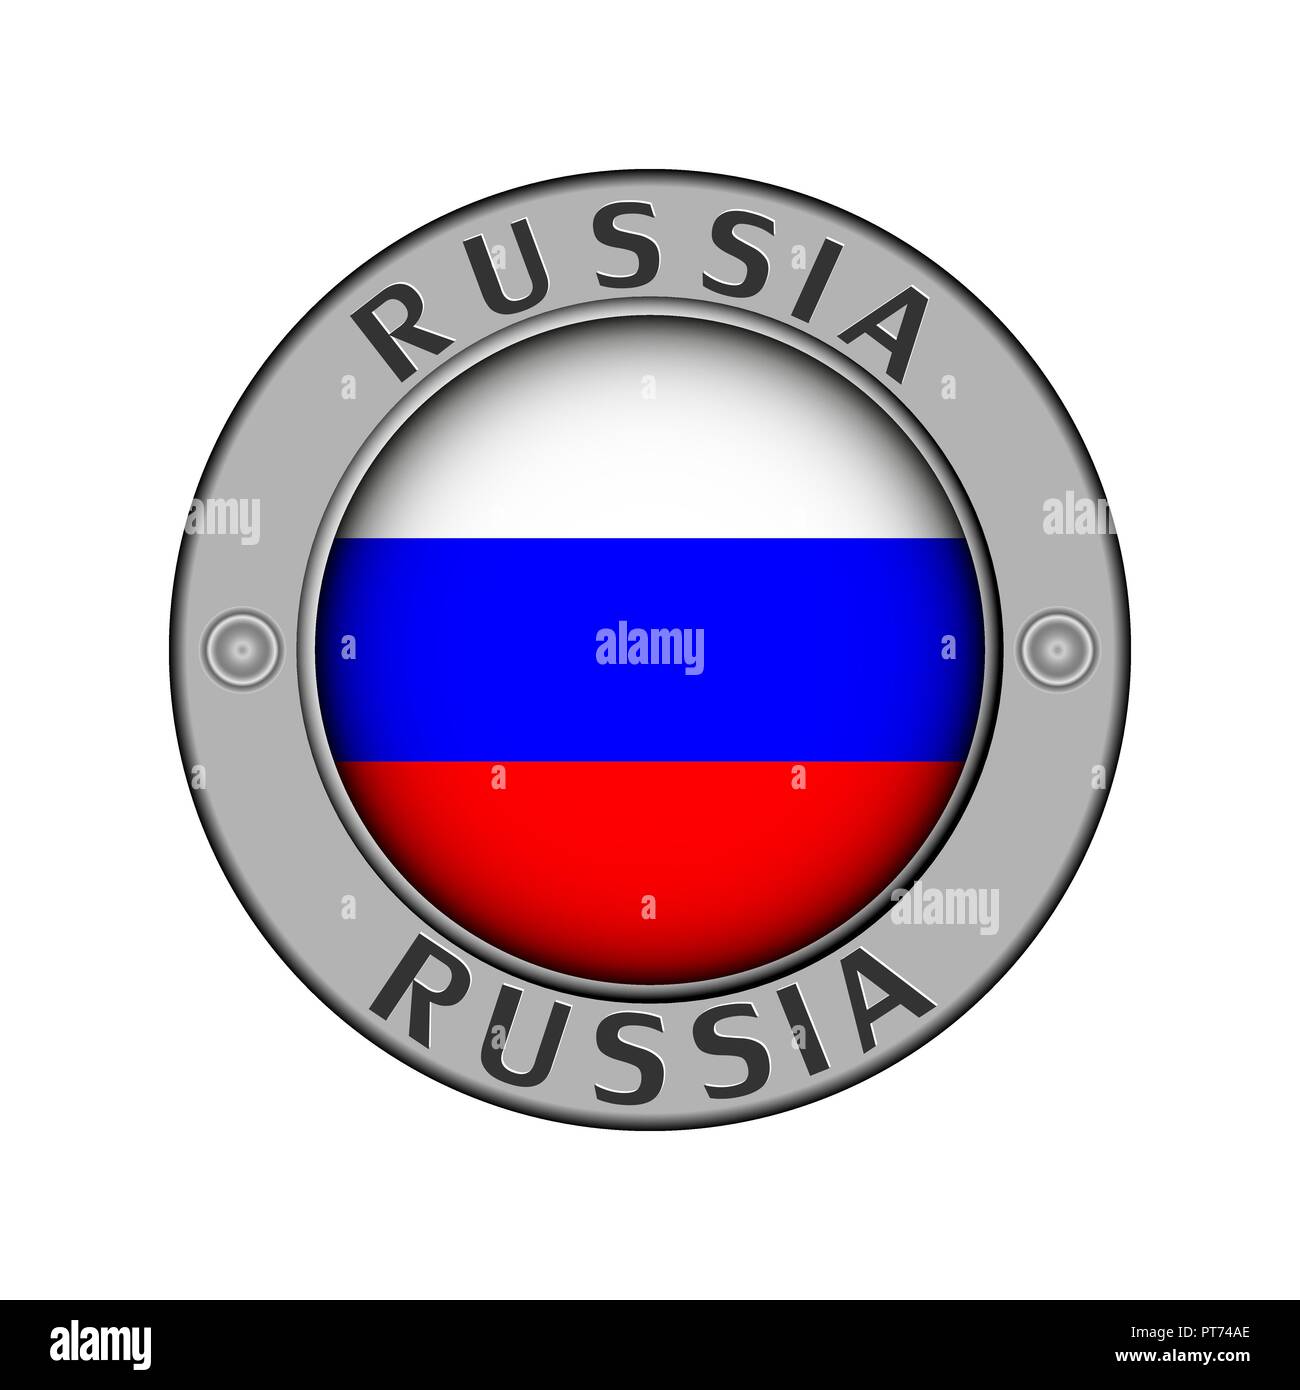 Rotondo di metallo medaglione con il nome del paese di Russia e un indicatore rotondo nel centro Illustrazione Vettoriale